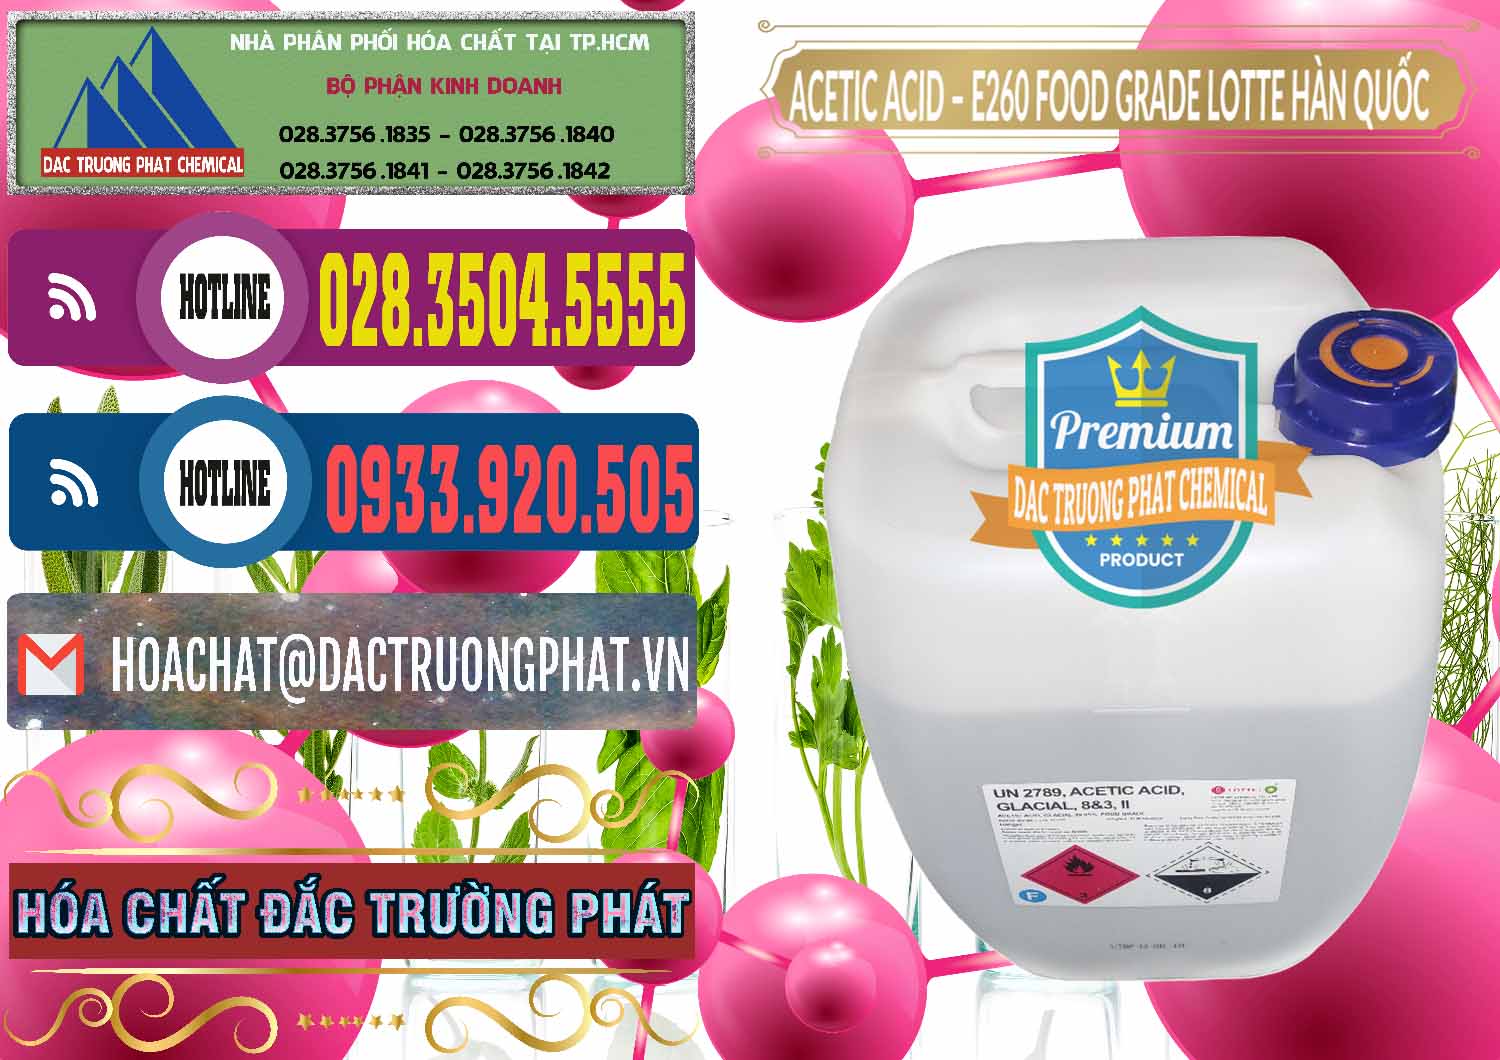 Chuyên cung ứng - bán Acetic Acid – Axit Acetic E260 Food Grade Hàn Quốc Lotte Korea - 0003 - Công ty chuyên phân phối _ bán hóa chất tại TP.HCM - muabanhoachat.com.vn